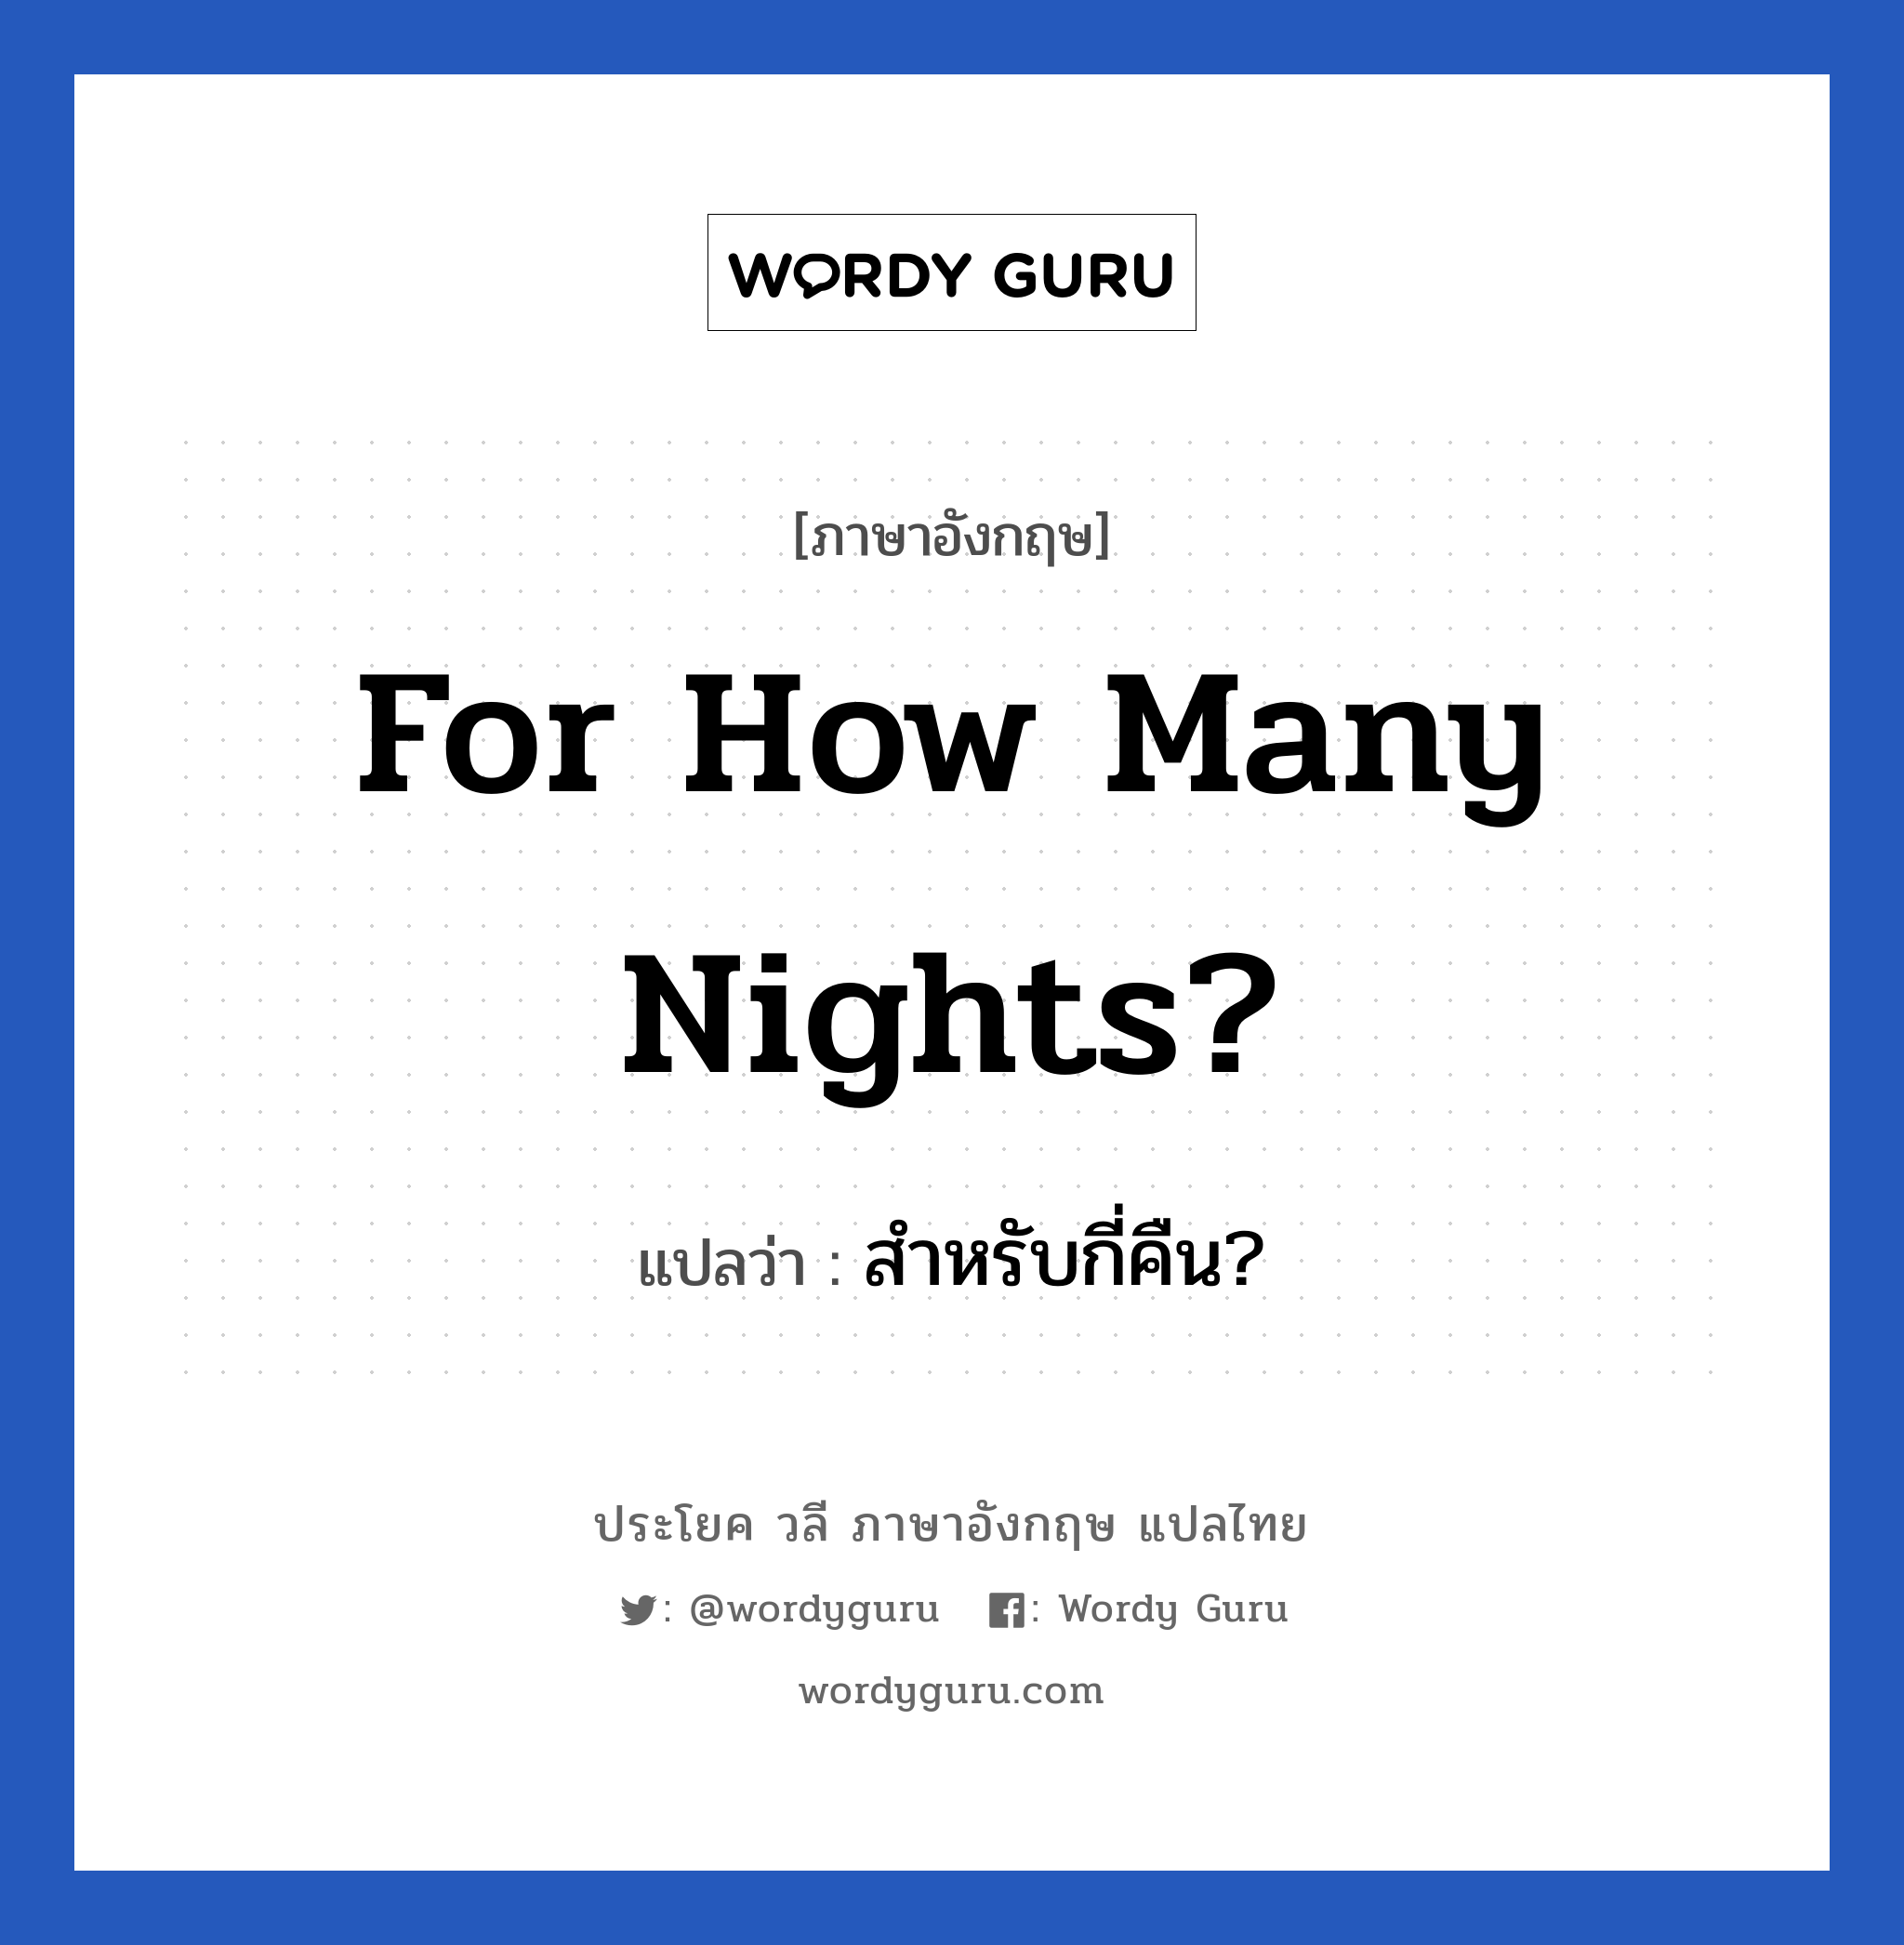 สำหรับกี่คืน? ภาษาอังกฤษ?, วลีภาษาอังกฤษ สำหรับกี่คืน? แปลว่า For how many nights?